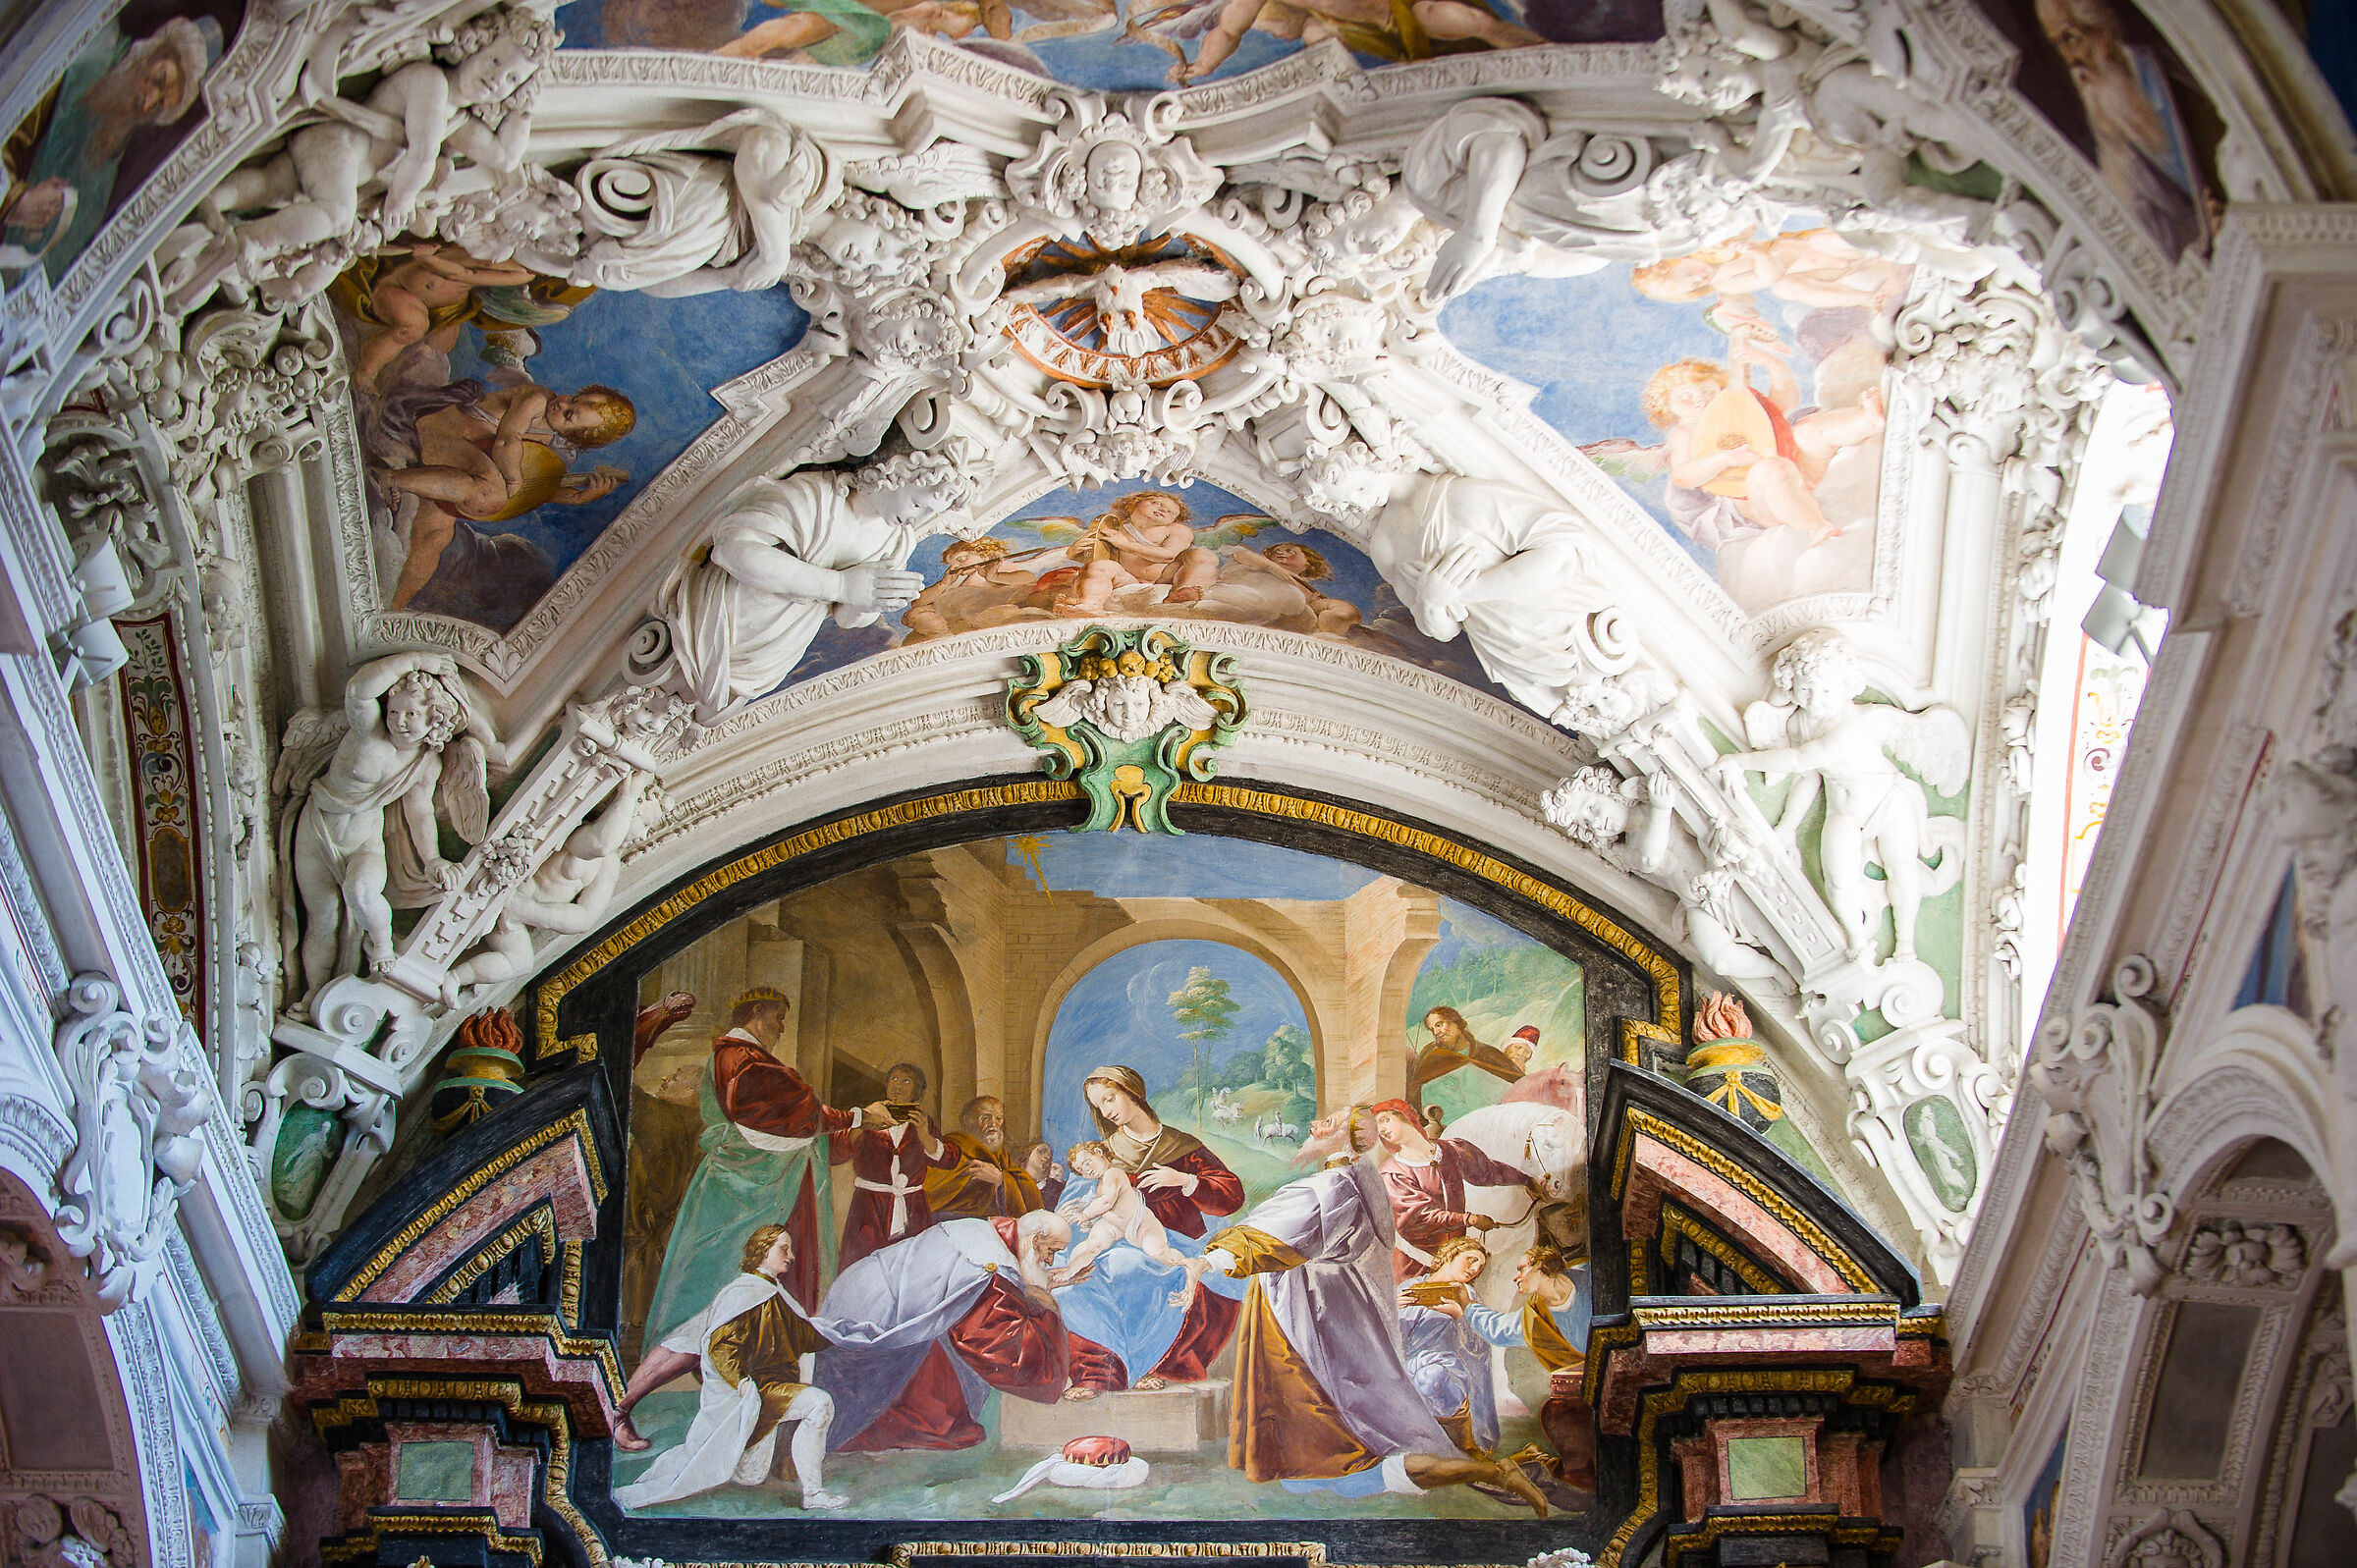 Sanctuary of Santa Maria dei Ghirli in Campione d'Italia...